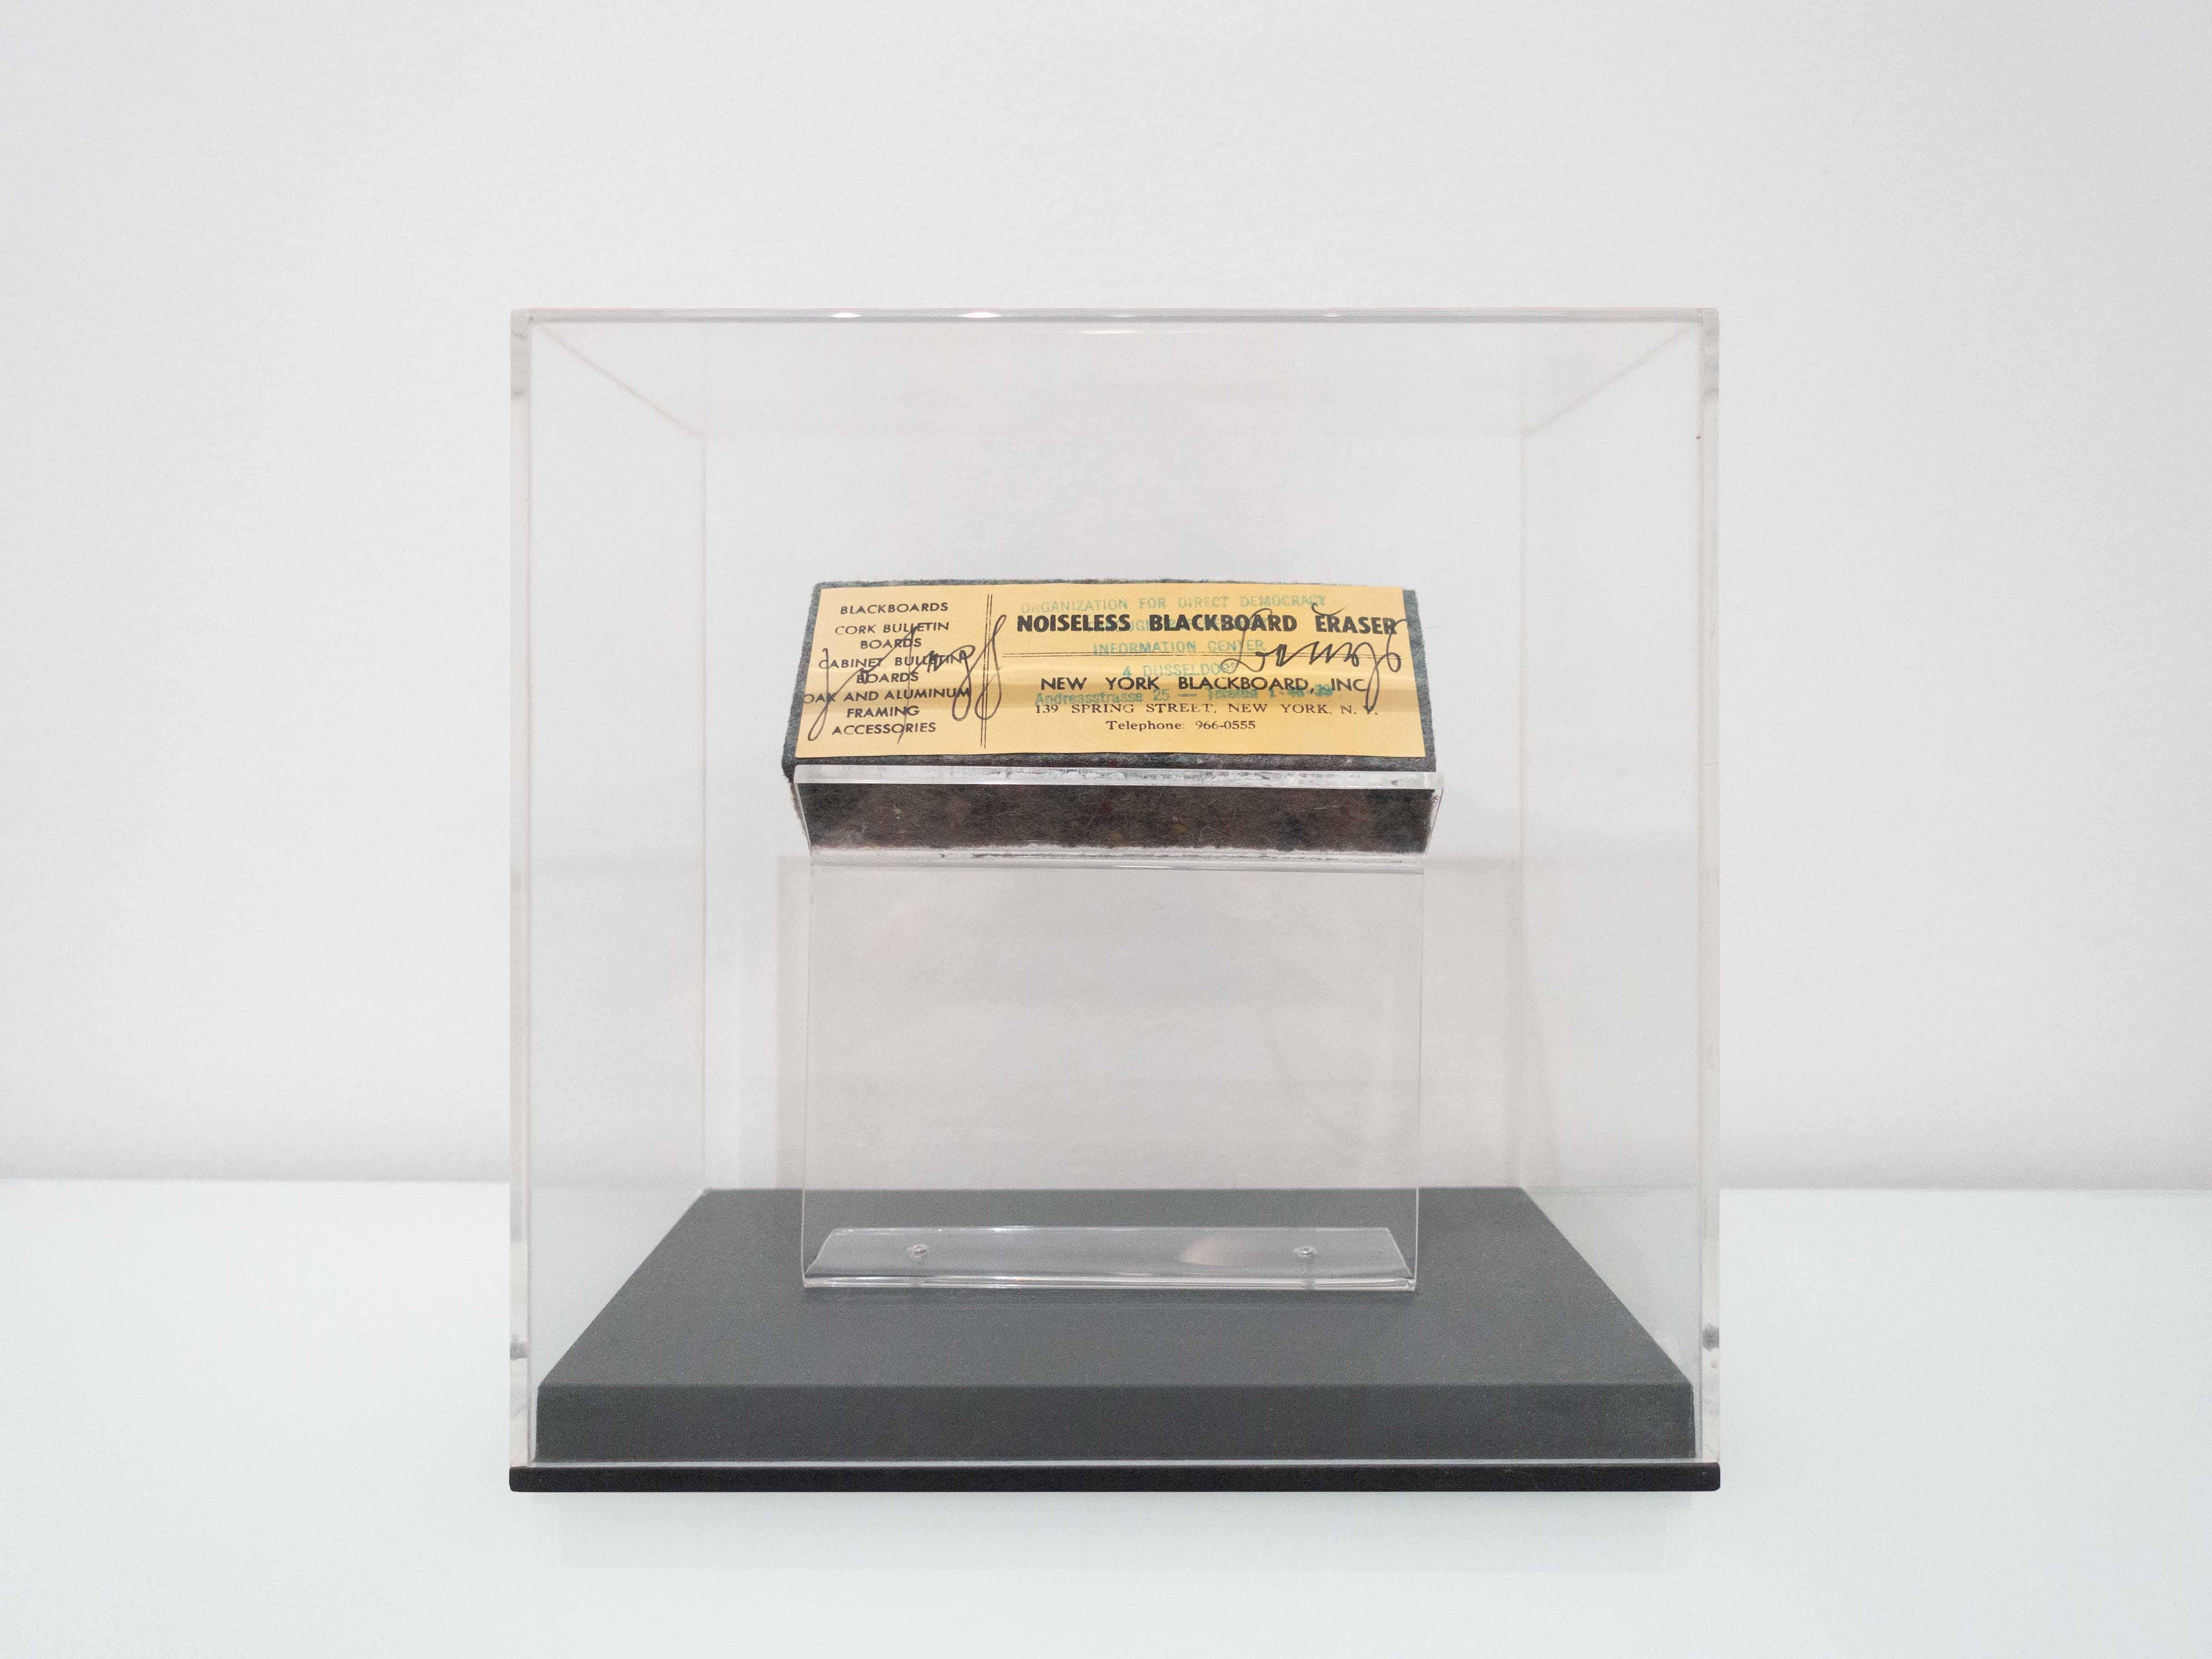 Joseph Beuys
Gomme à tableau silencieuse
1974
gomme en feutre pour tableau noir avec ajouts de tampons
Publié par Ronald Feldman Fine Arts, Inc, New York.
Dimensions de l'ouvrage : 2,5 x 12,6 x 5 cm
Dimensions de la boîte : 20,5 x 20,8 x 13